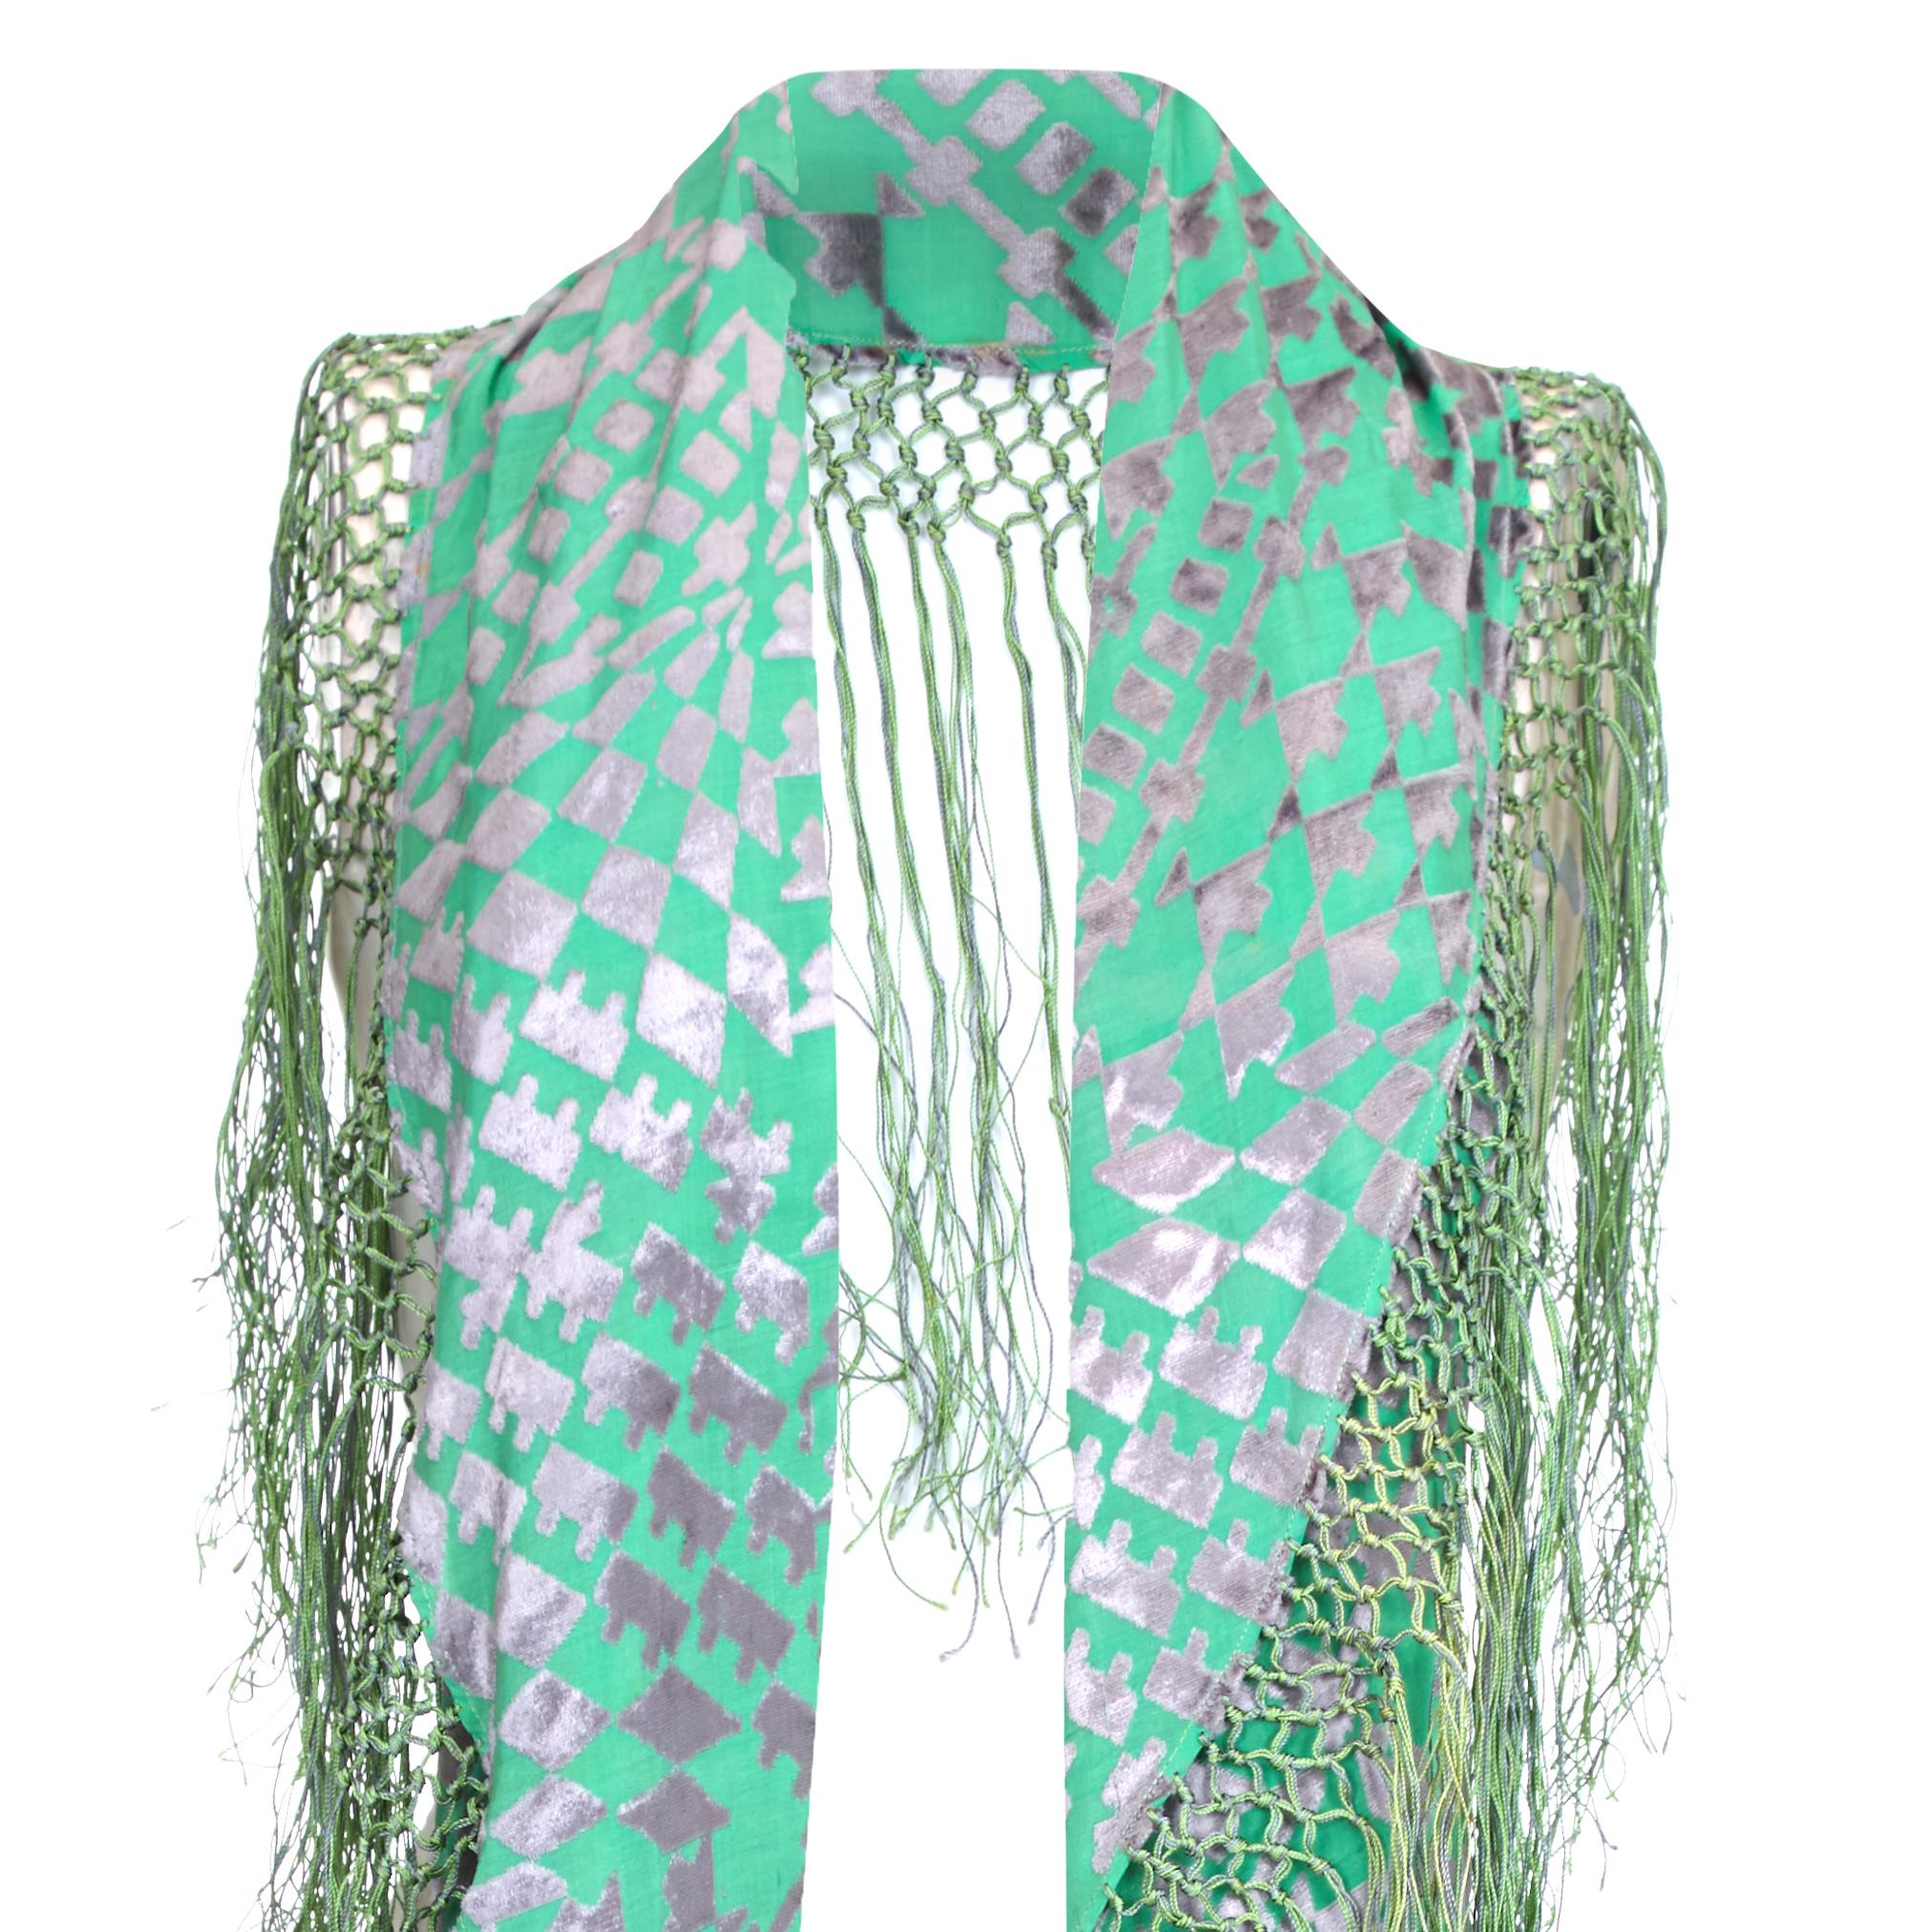 Außergewöhnlicher und sehr seltener Vintage-Schal aus den 1920er Jahren mit jadegrünem und silbernem ausgebranntem Pannesamt in geometrischem Muster im Art-Deco-Stil.  Der Schal ist halbkreisförmig und hat grüne und silberne Quasten an der gebogenen